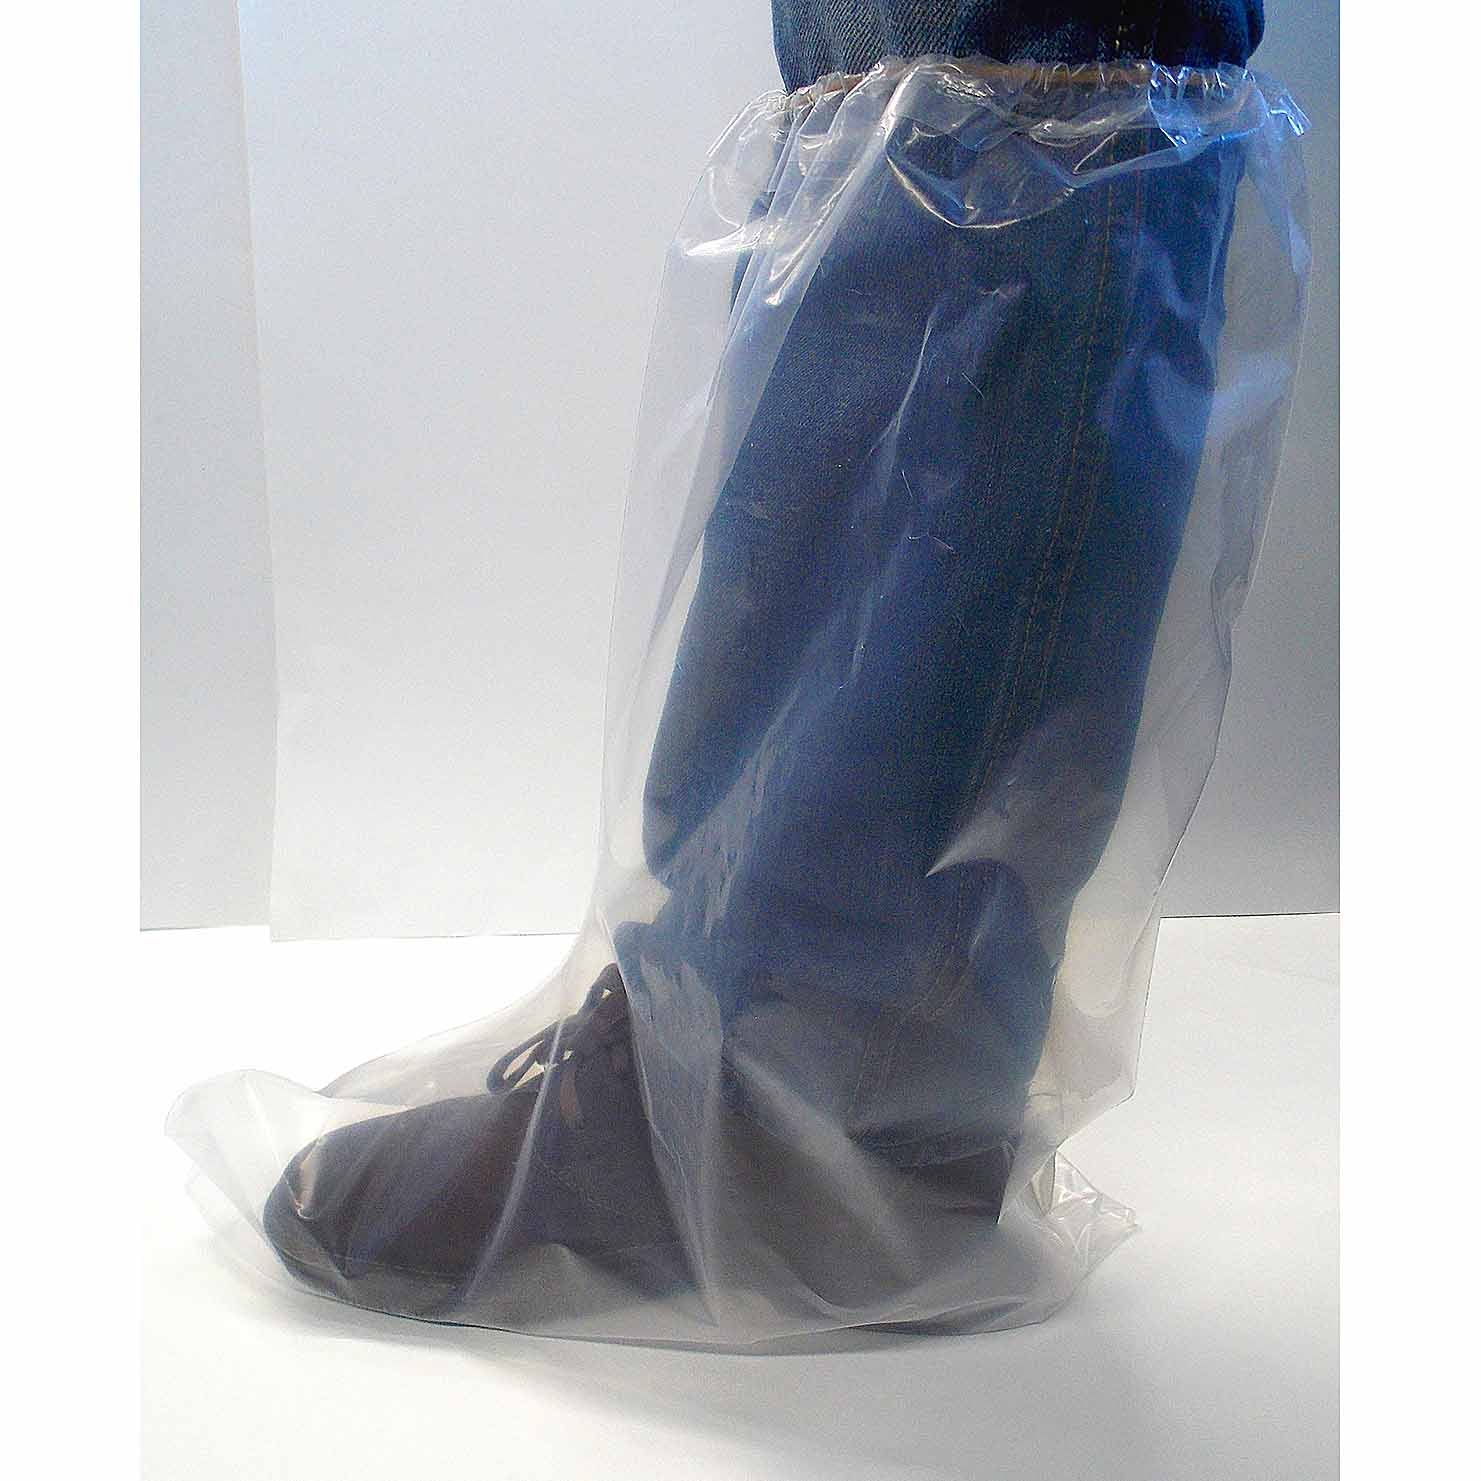 Stivali monouso con parte superiore elastica - 6,5 MIL (confezione da 50)